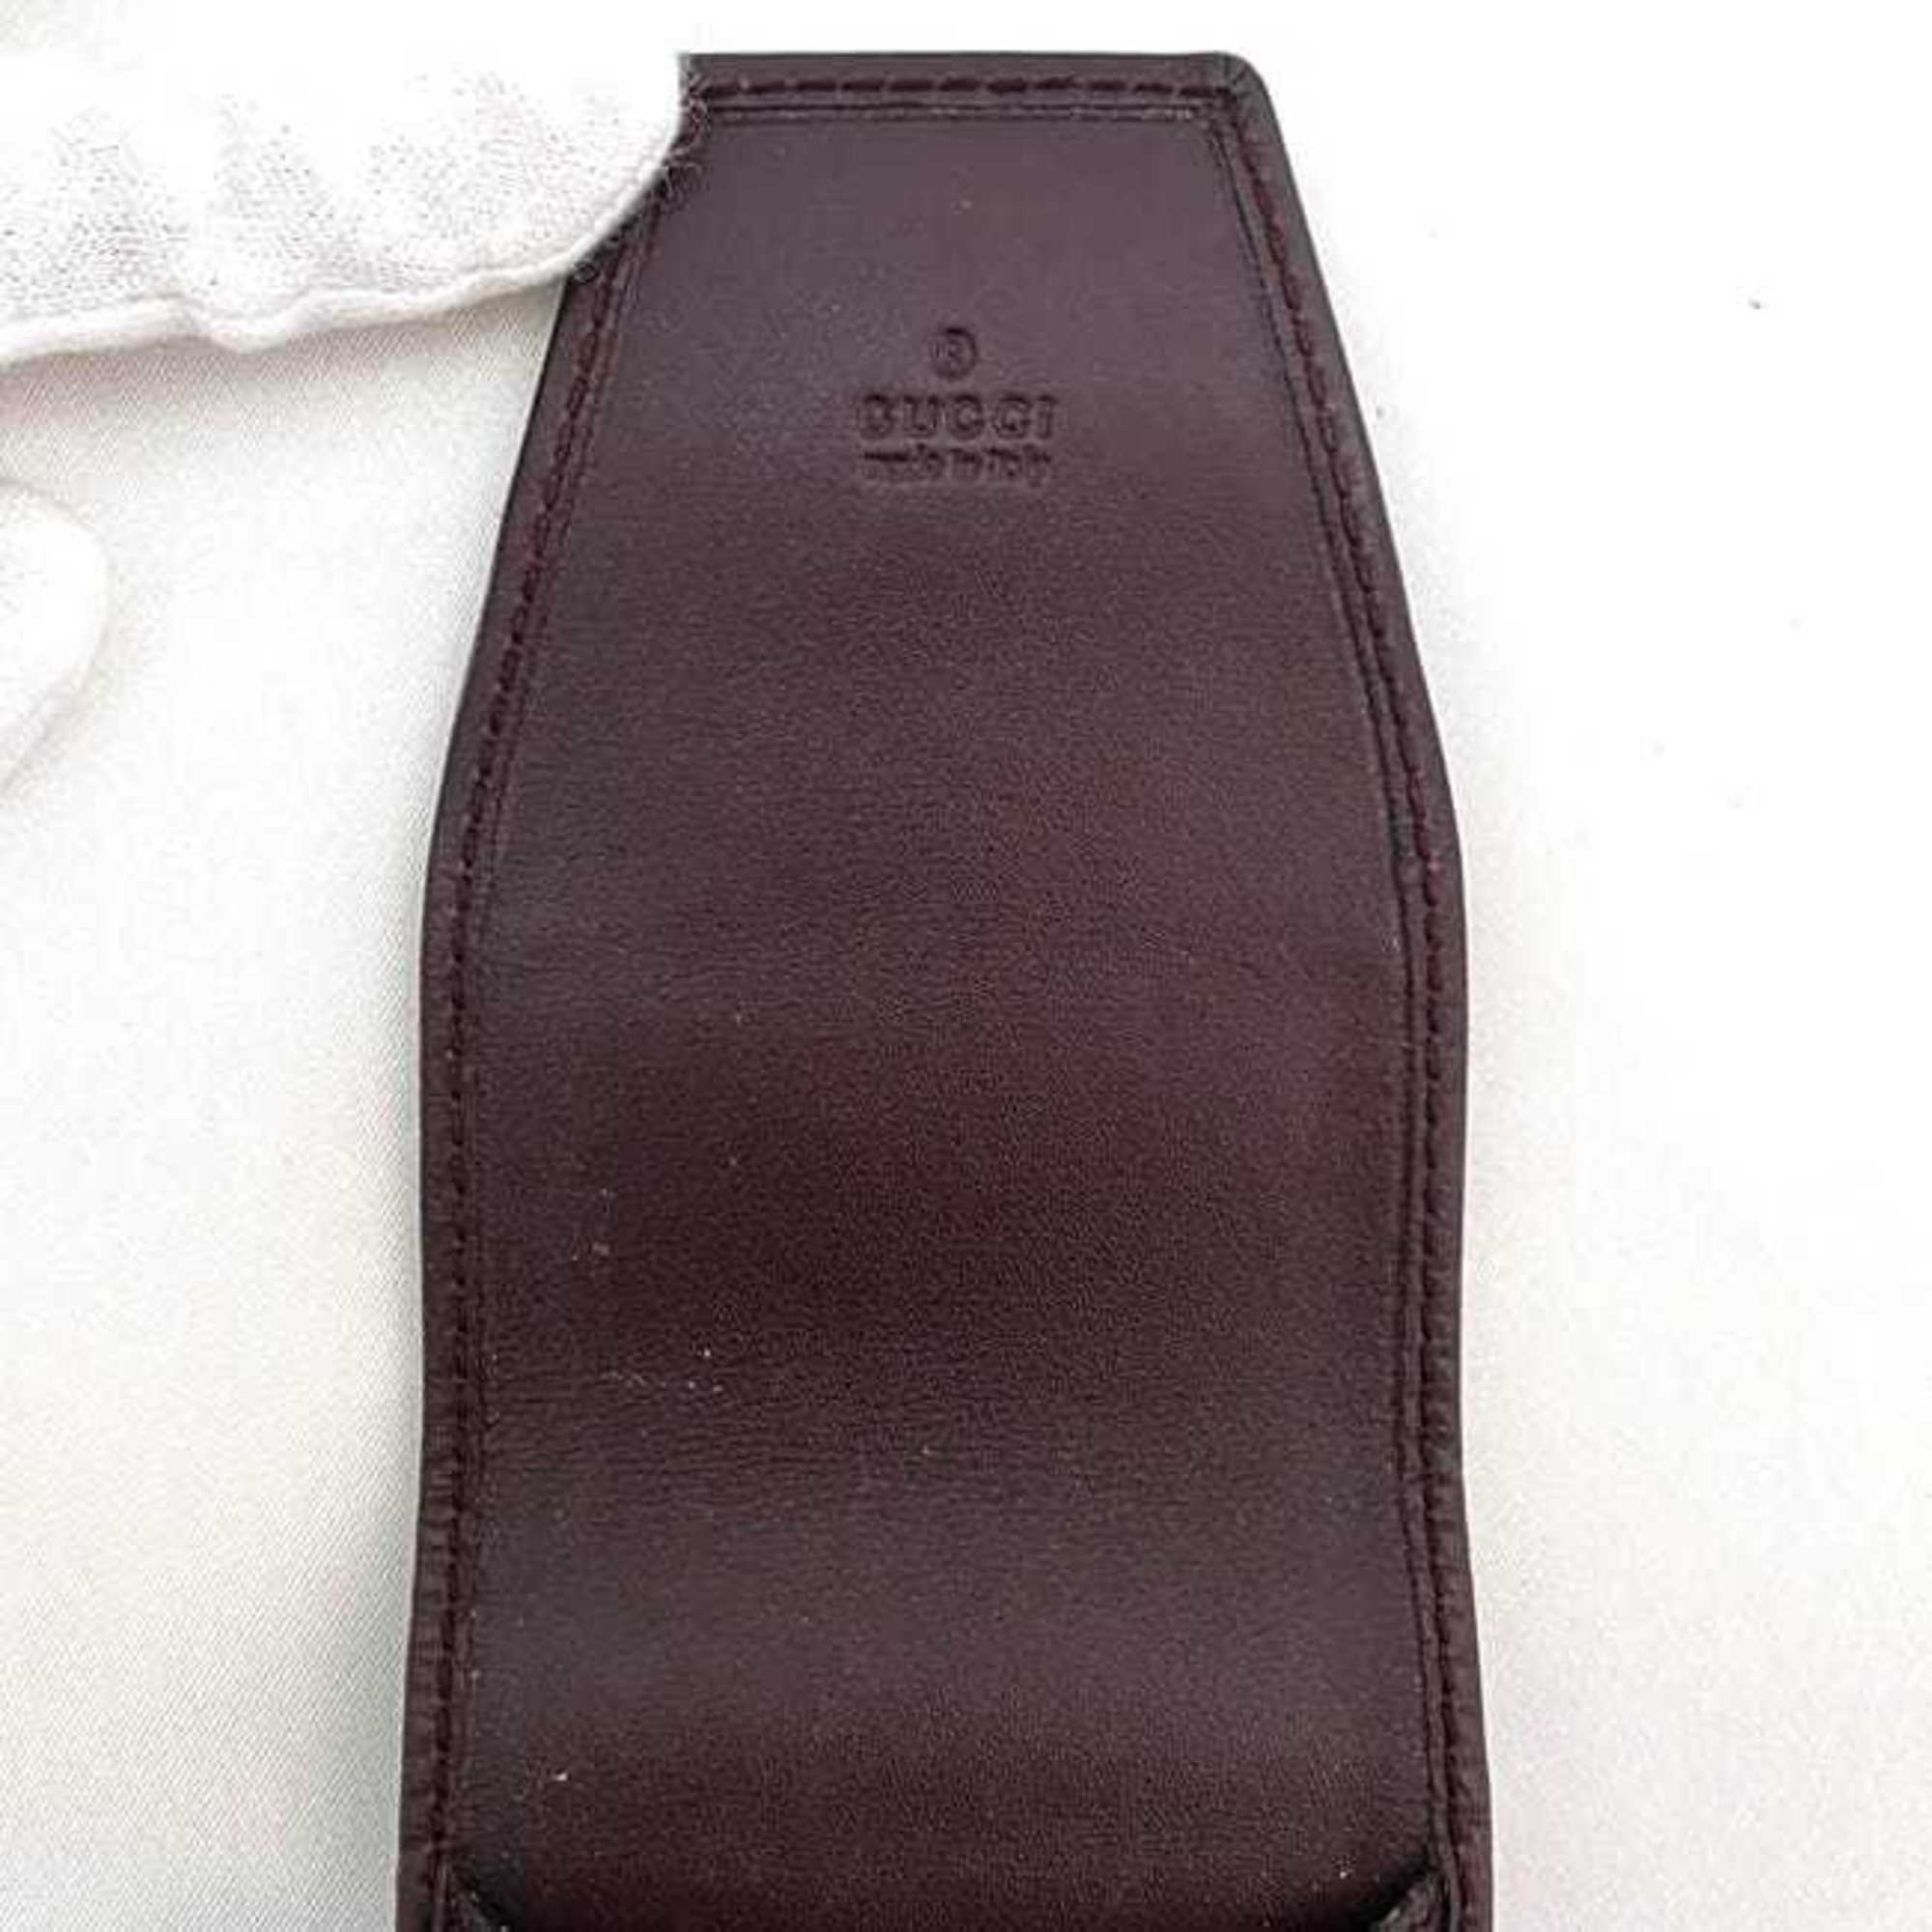 Gucci Cigarette Case Bordeaux Ardoise 181716 ec-20640 Tobacco PVC Leather GUCCI iQOS Compact Men's Women's